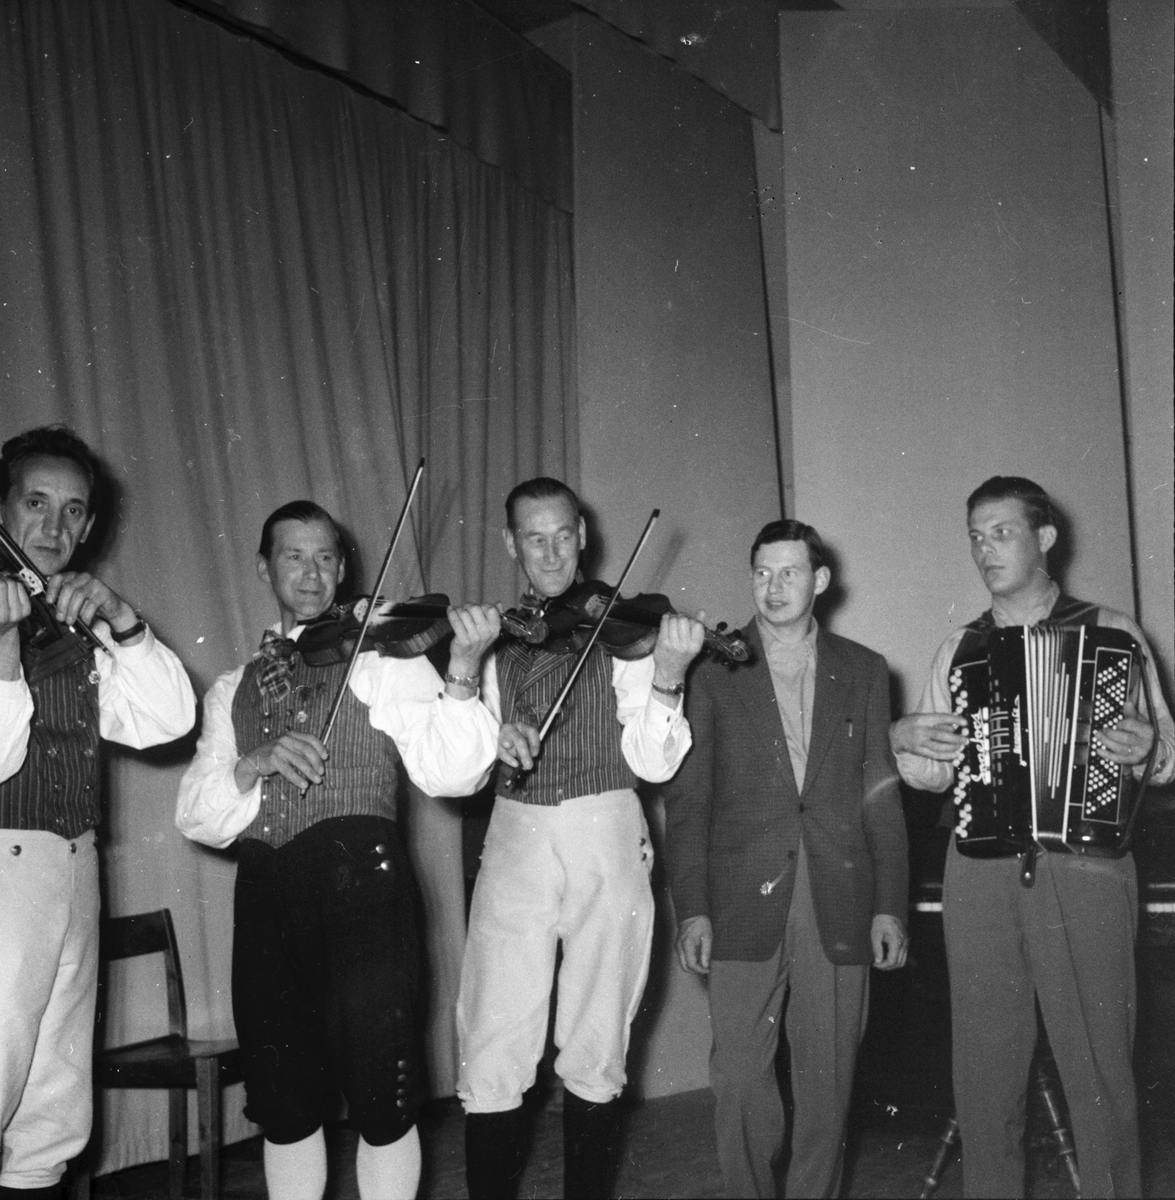 De gamlas dag. Sibo 7/9 1956.
Sångare Gösta "Snoddas" Nordgren och dragspelare Evald Sonefors.